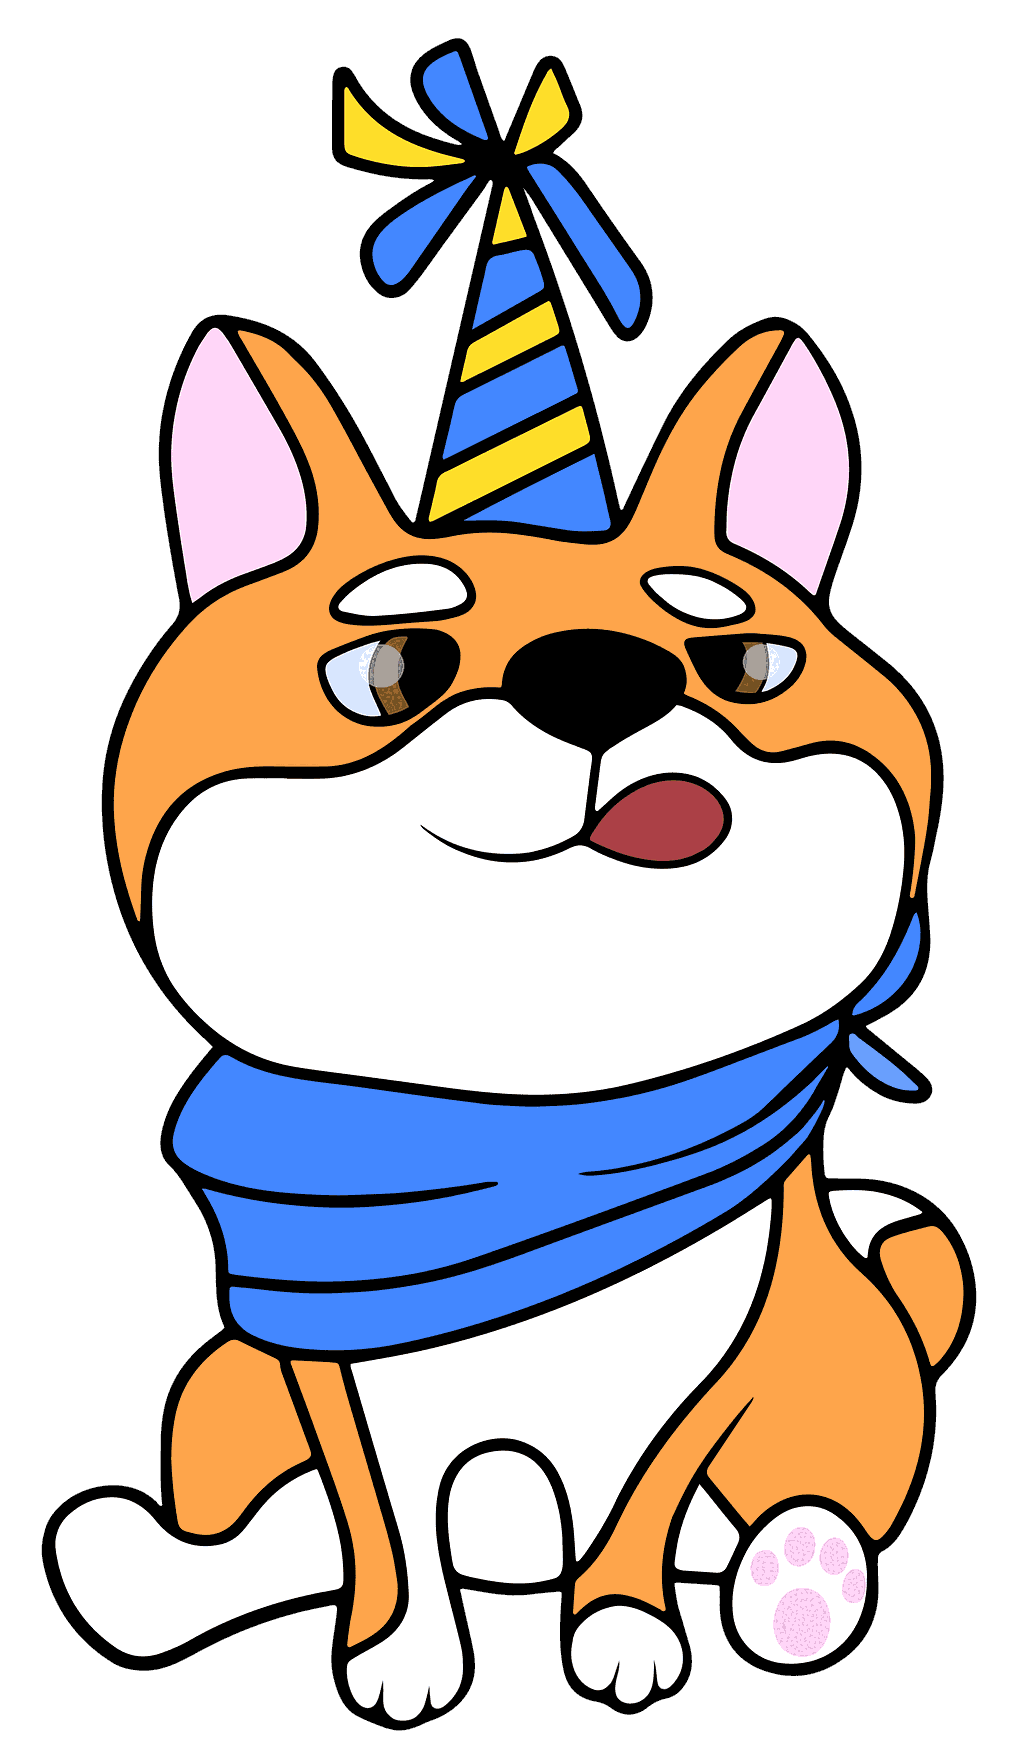 dog-birthday